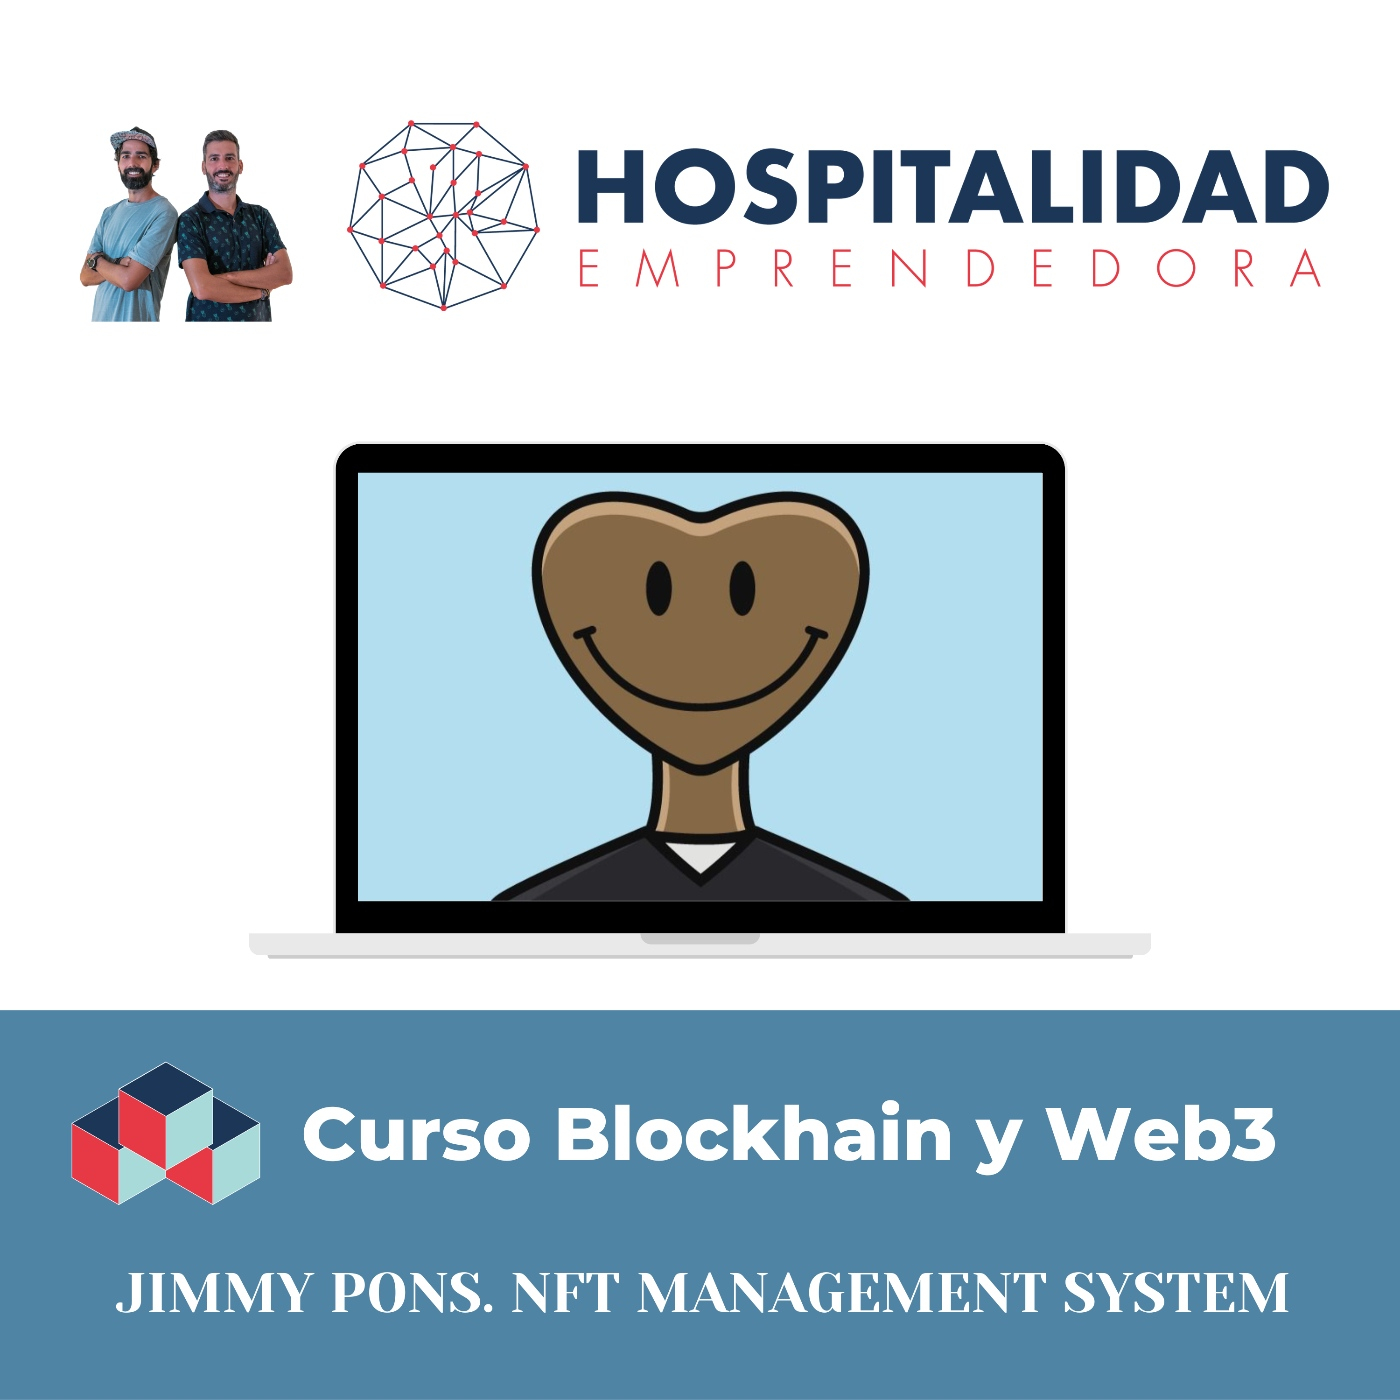 Curso Blockchain y Web3 Turismo y Hotelería 2ª edición. Sesion 2 con Jimmy Pons. NFT Management System